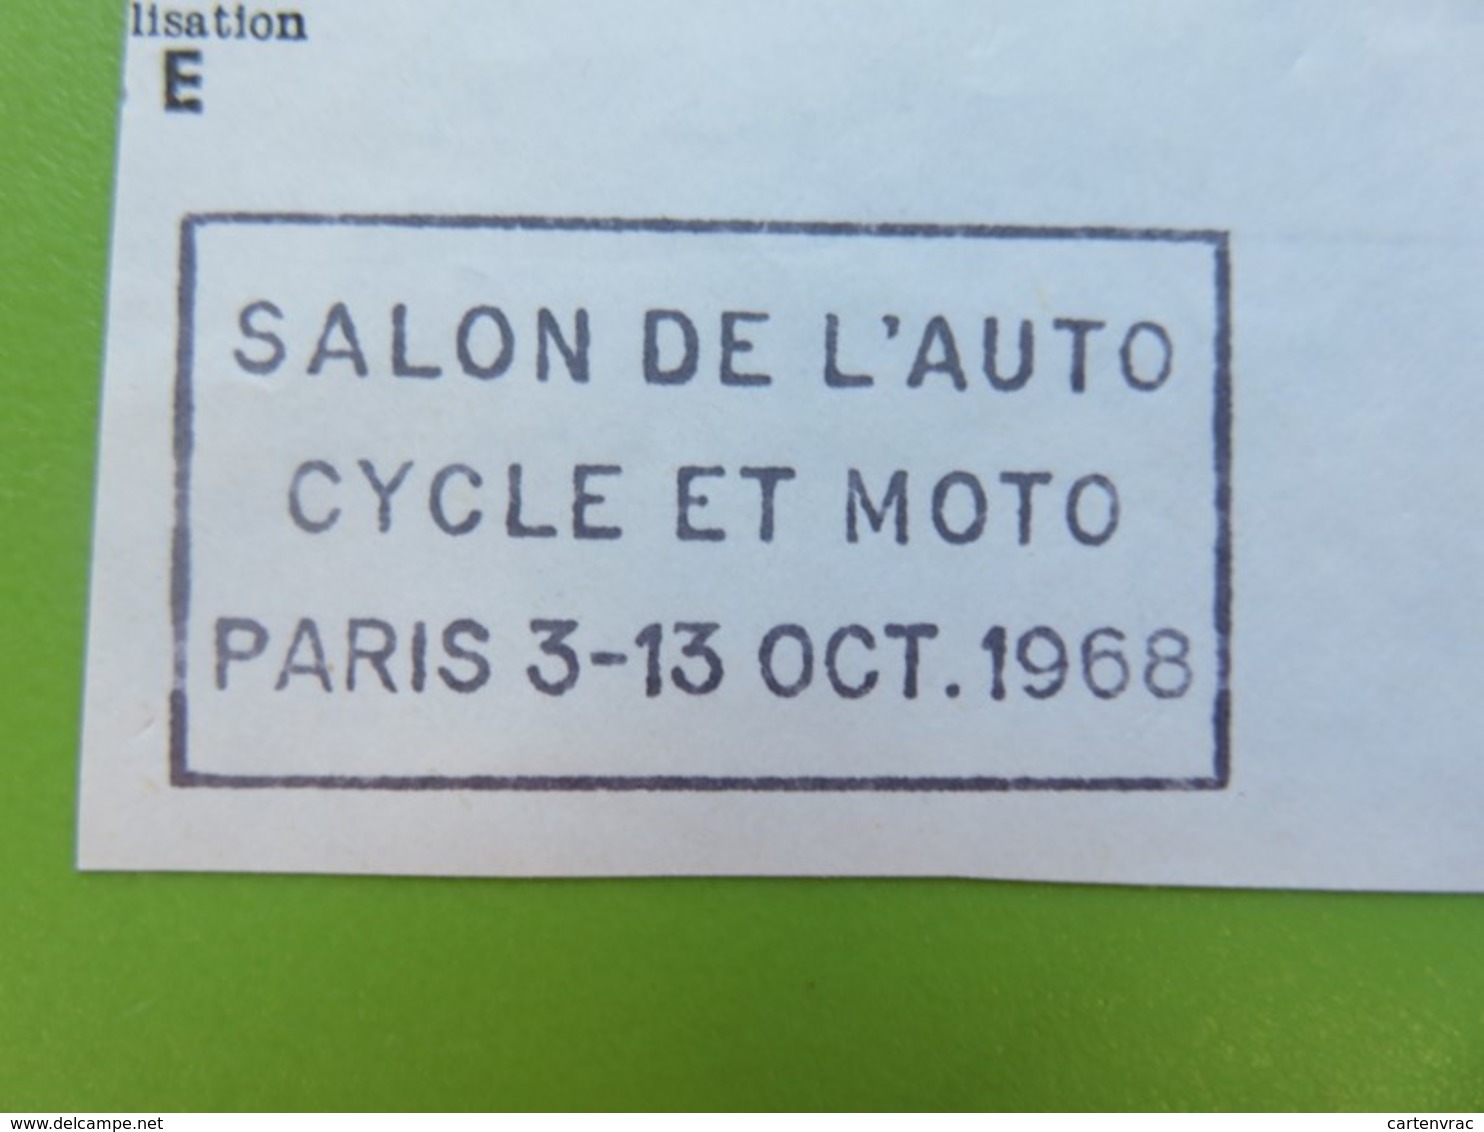 Flamme - Salon Auto Cycle Et Moto Paris Octobre 1968 - Cachet Paris Avenue D'Italie - Timbre YT N° 1536 (M. De Cheffer) - Mechanical Postmarks (Advertisement)